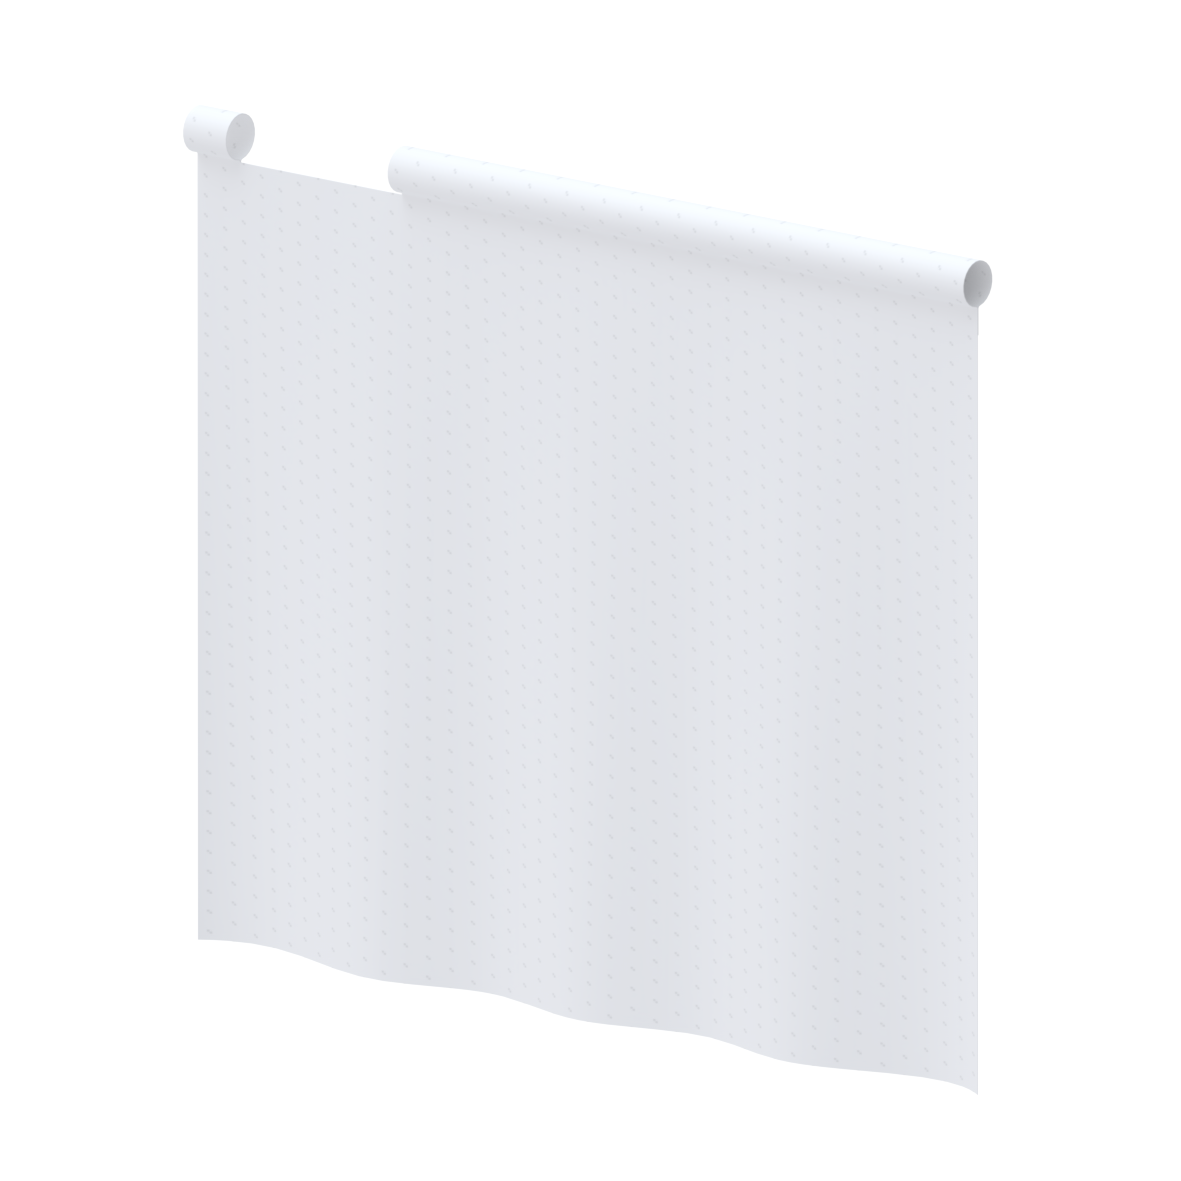 Care Rideau anti-éclaboussure, 700 x 850 x 1 mm, Blanc